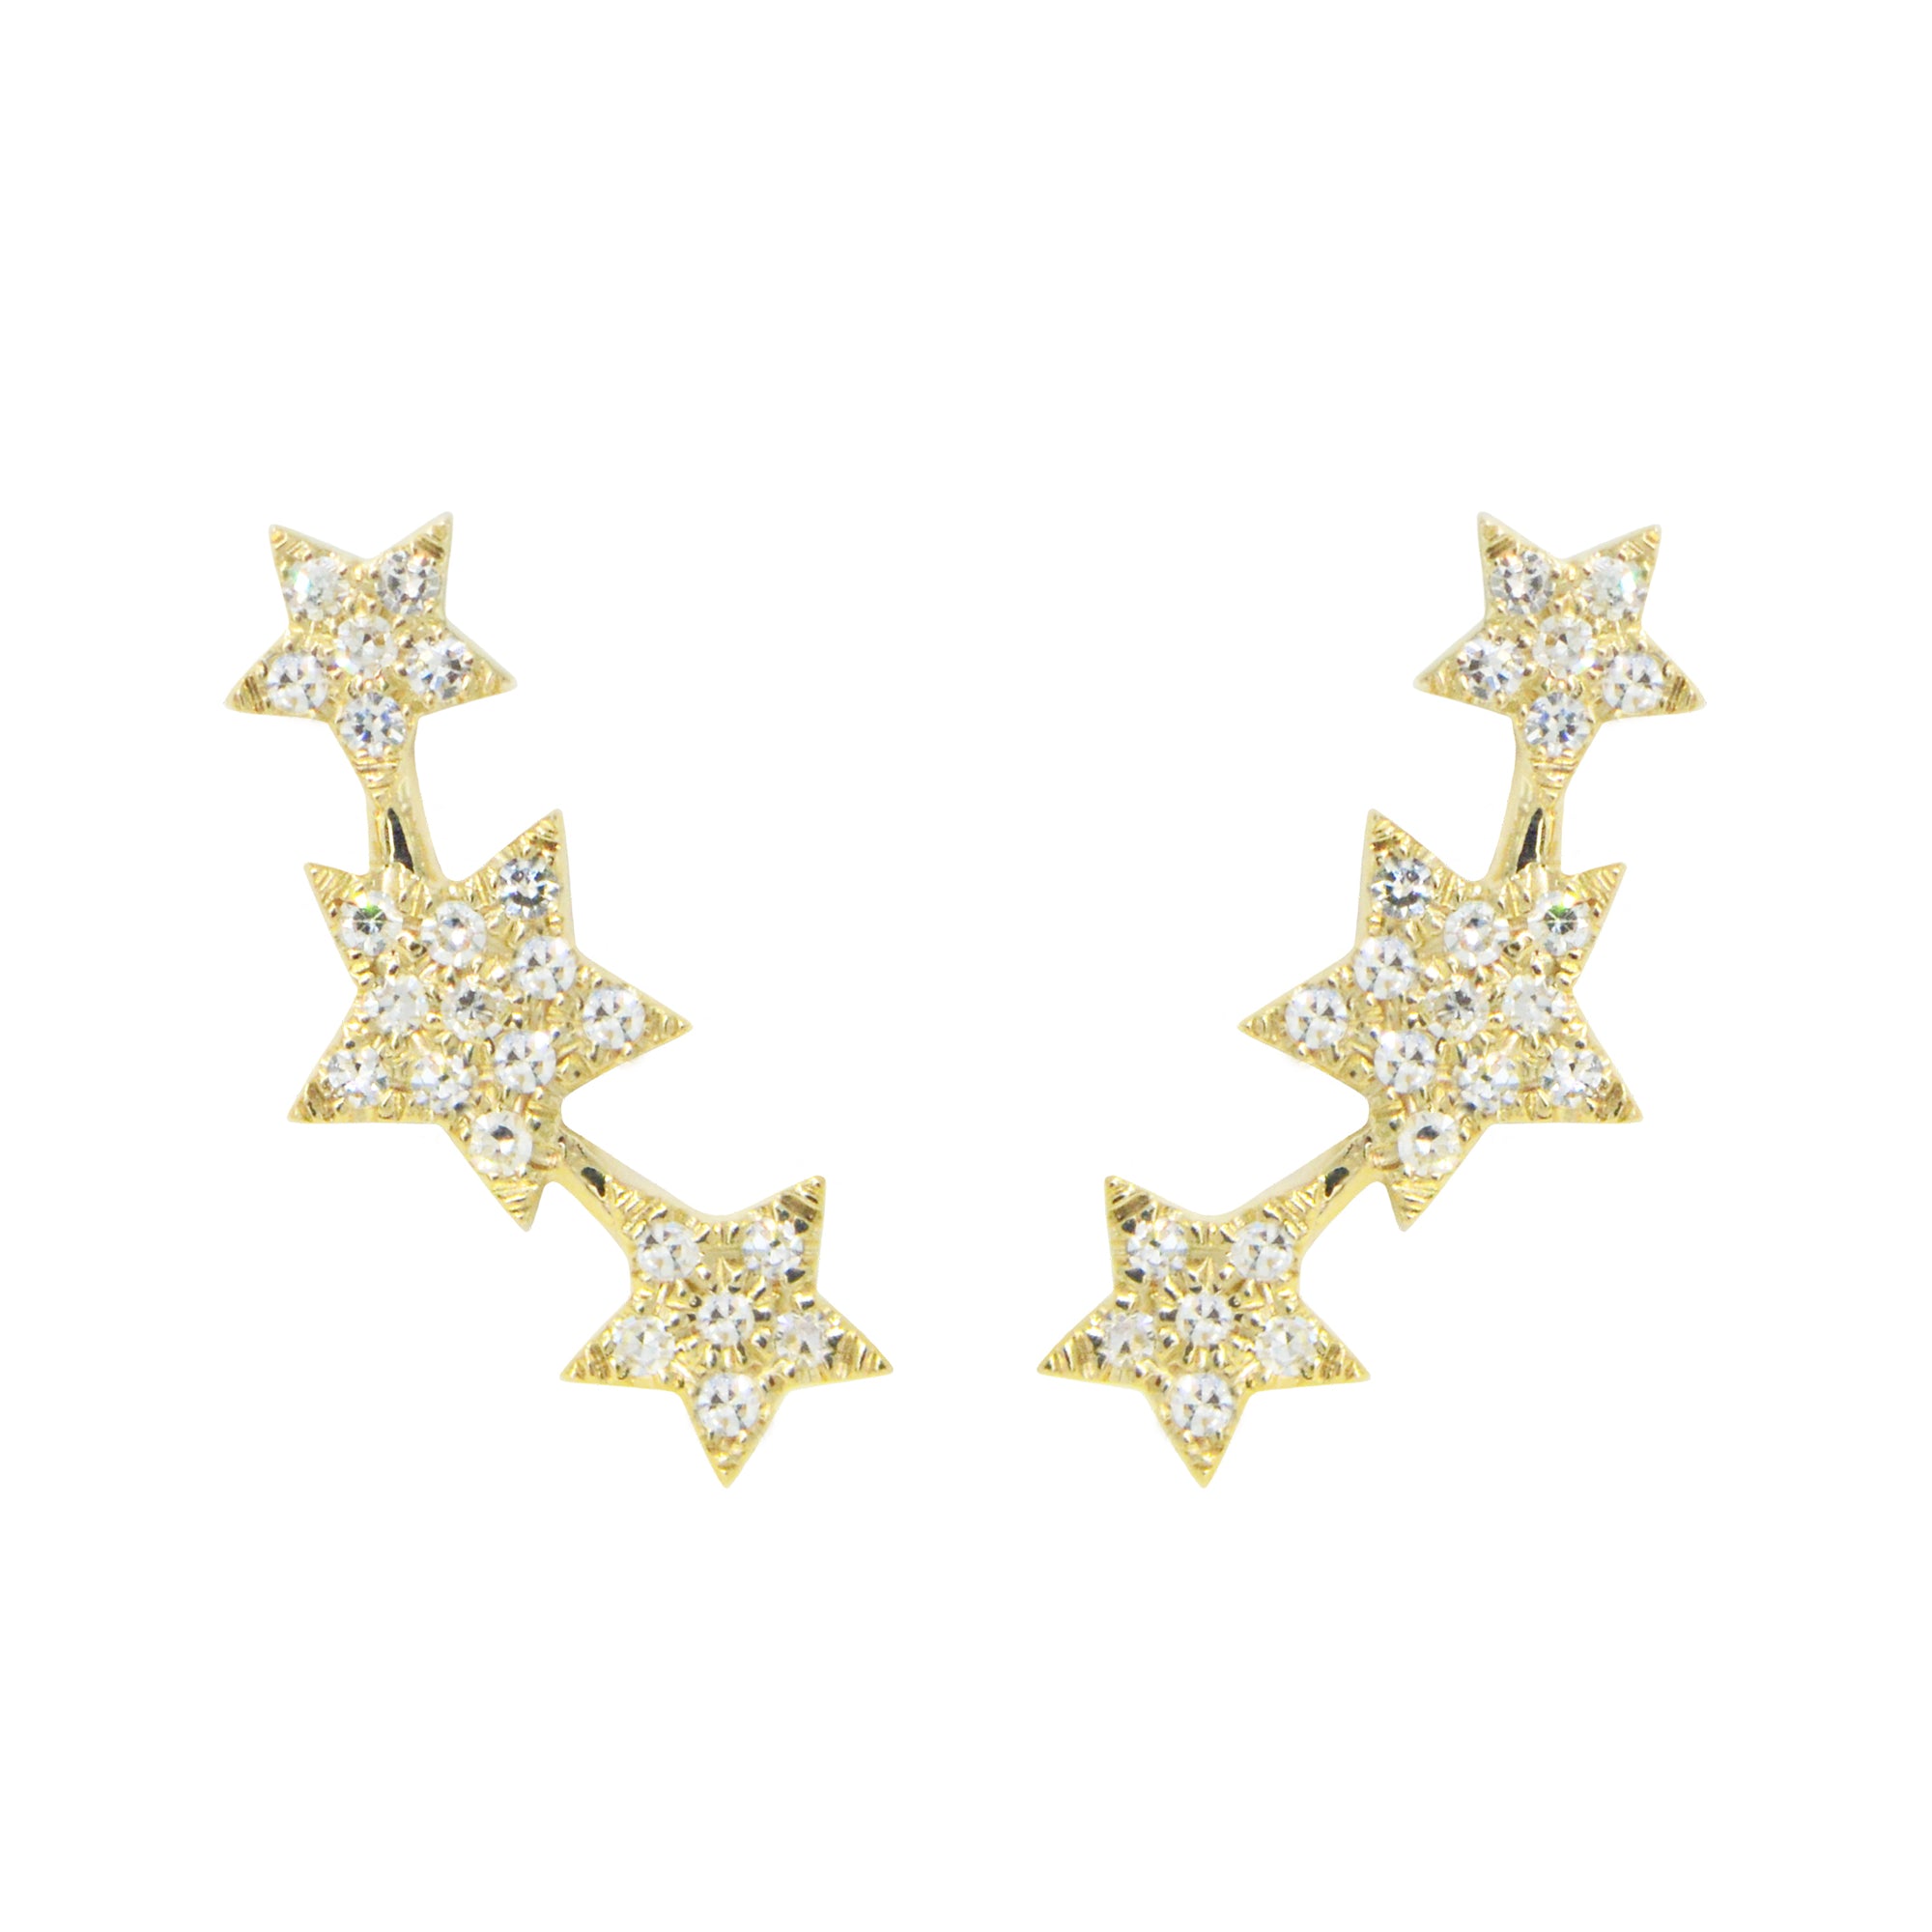 triple star stud earrings with diamonds